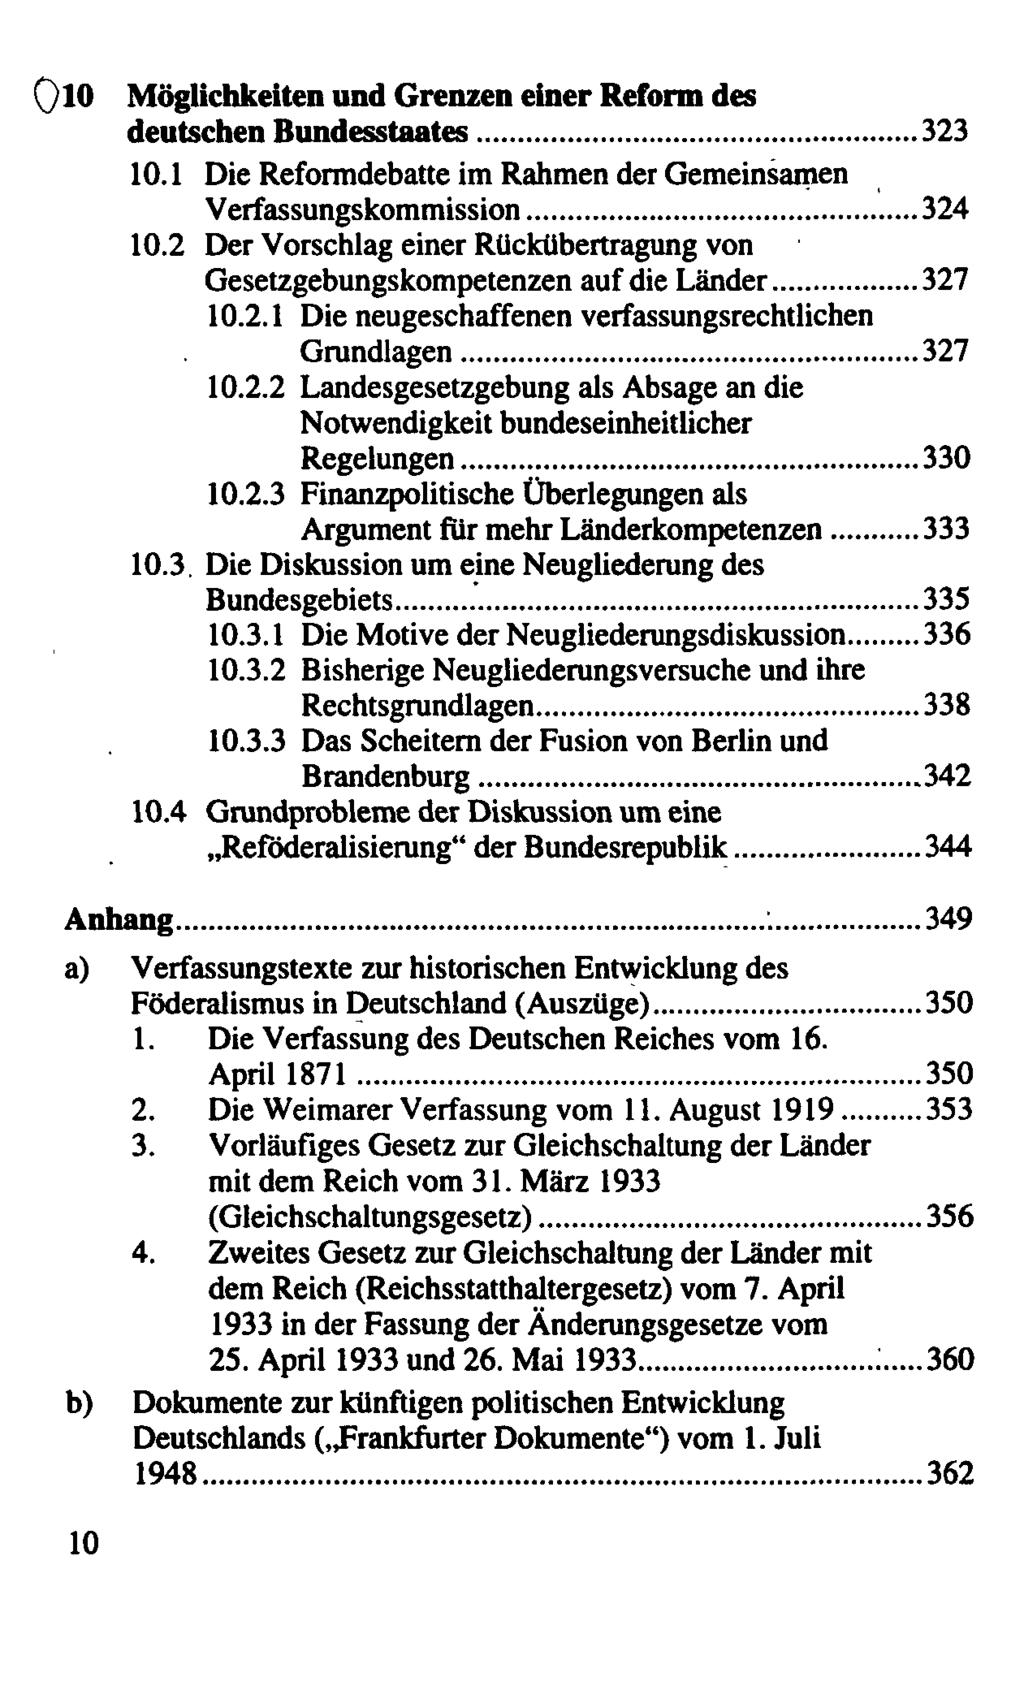 Möglichkeiten und Grenzen einer Reform des deutschen Bundesstaates 323 10.1 Die Reformdebatte im Rahmen der Gemeinsamen Verfassungskommission 324 10.